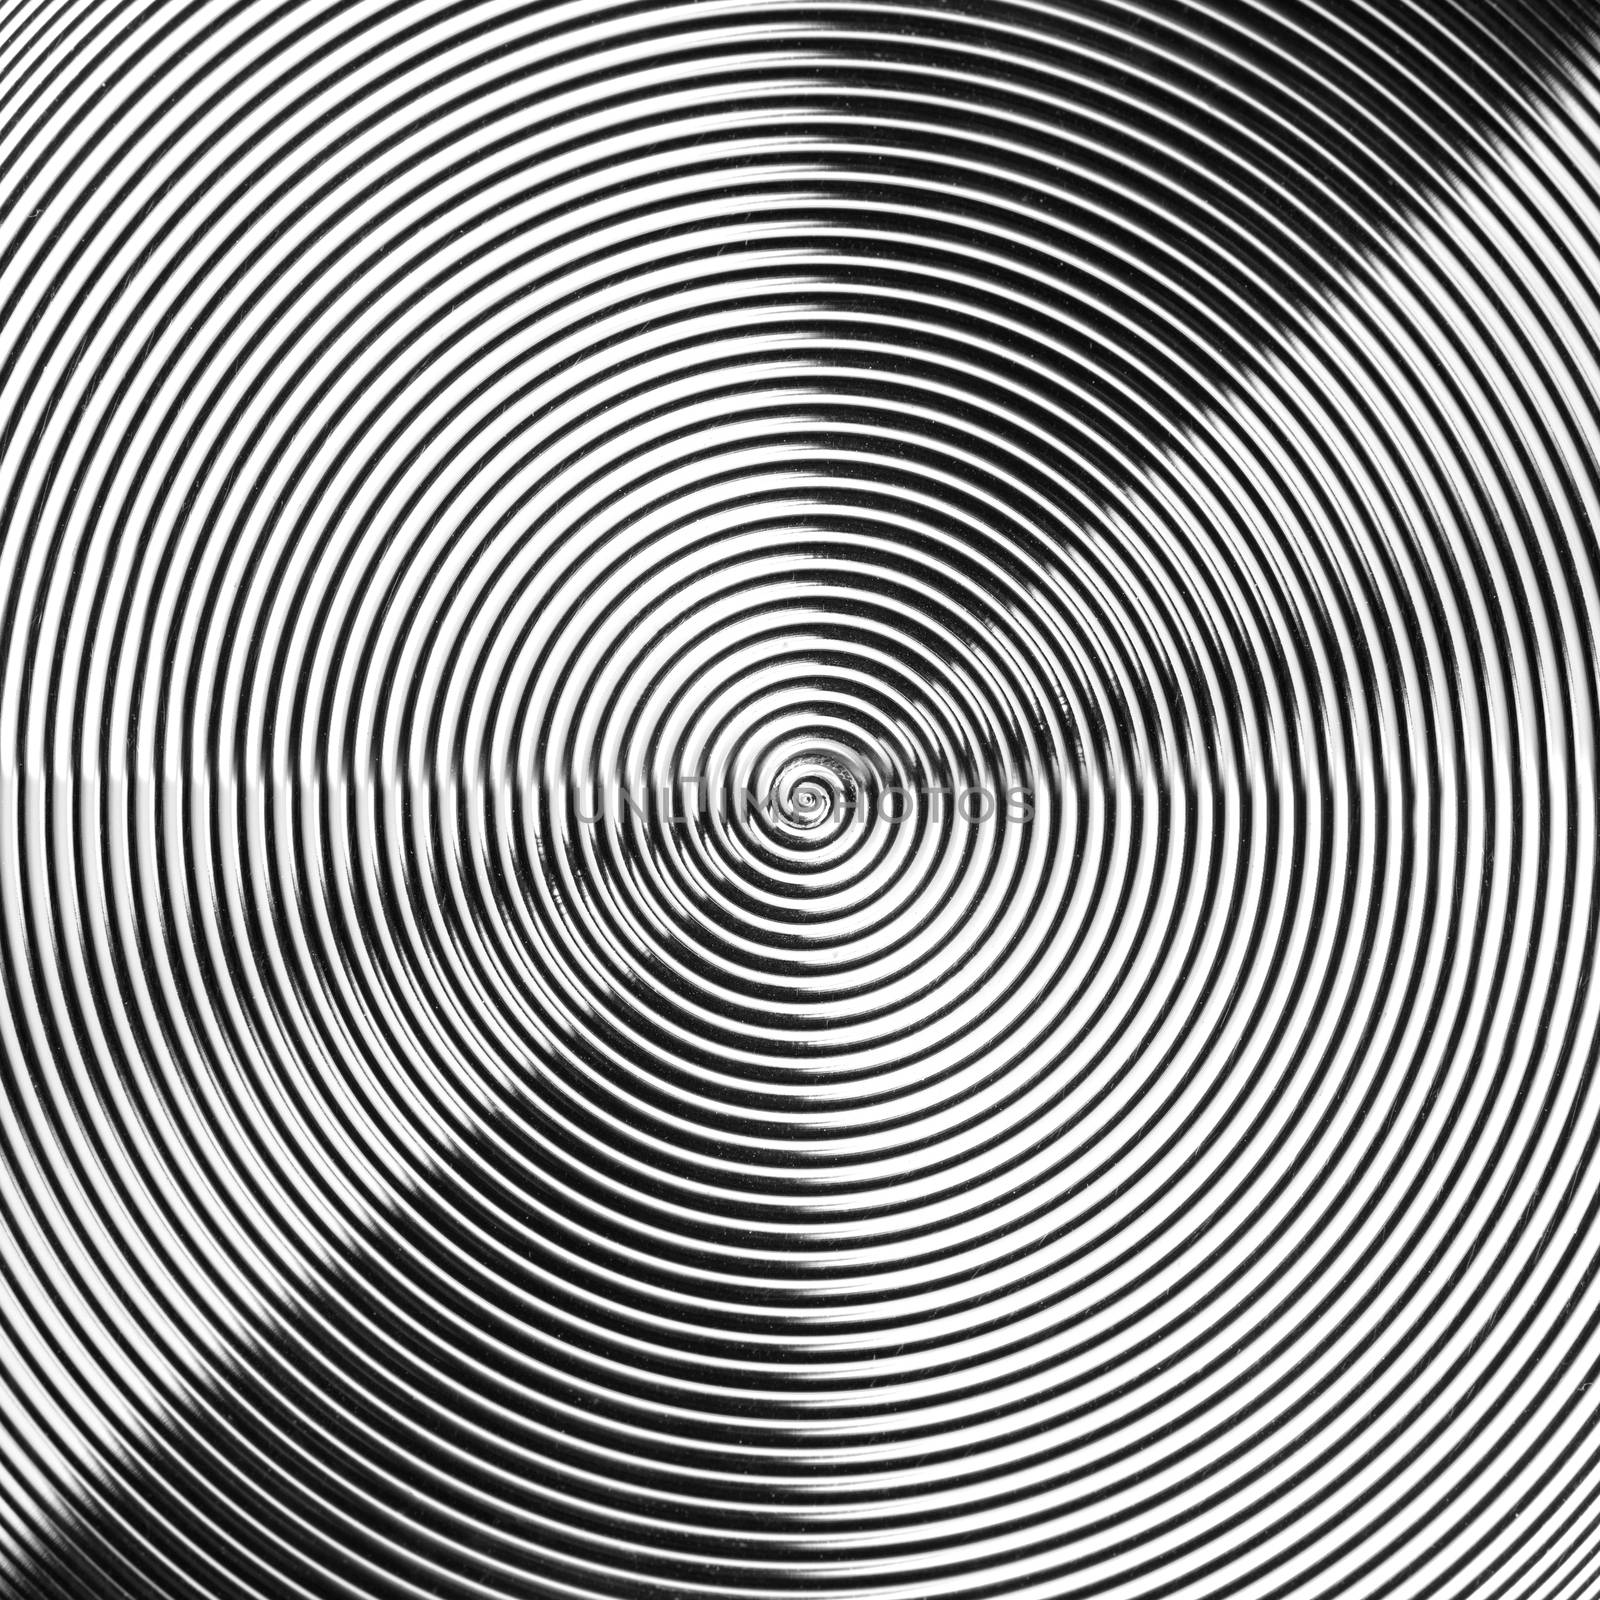 spirals from metal pattern